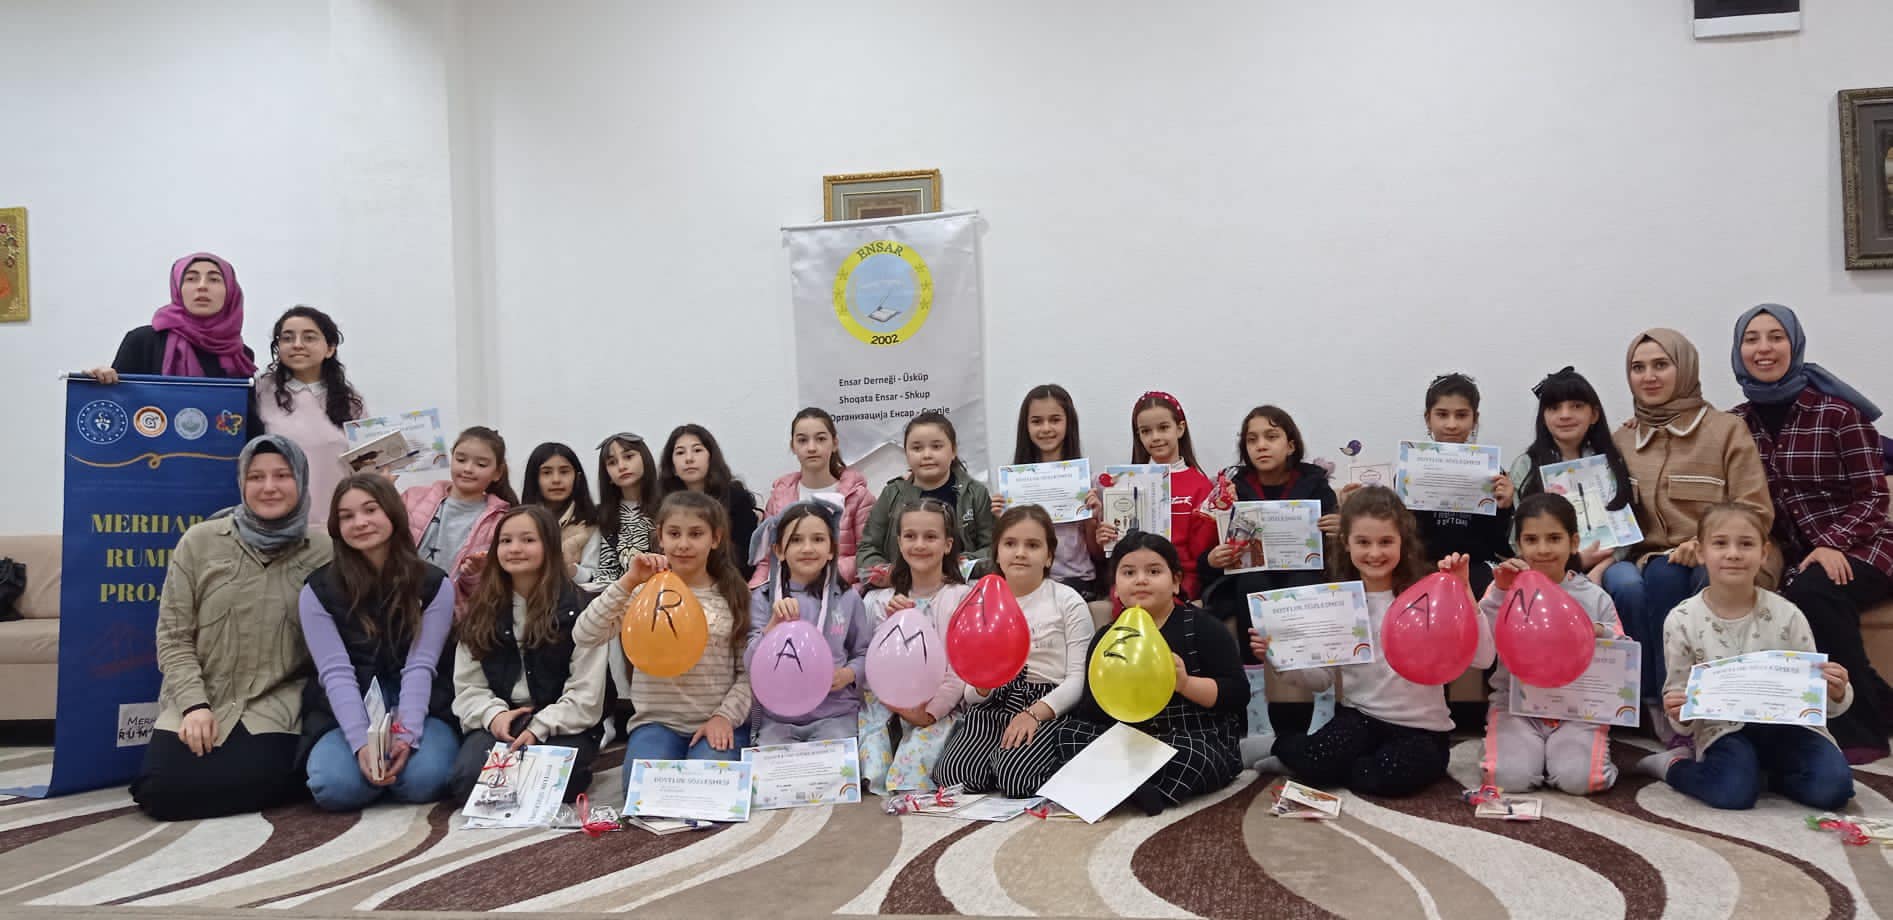 K. Makedonya’da “Merhaba Rumeli” projesi gerçekleştirildi